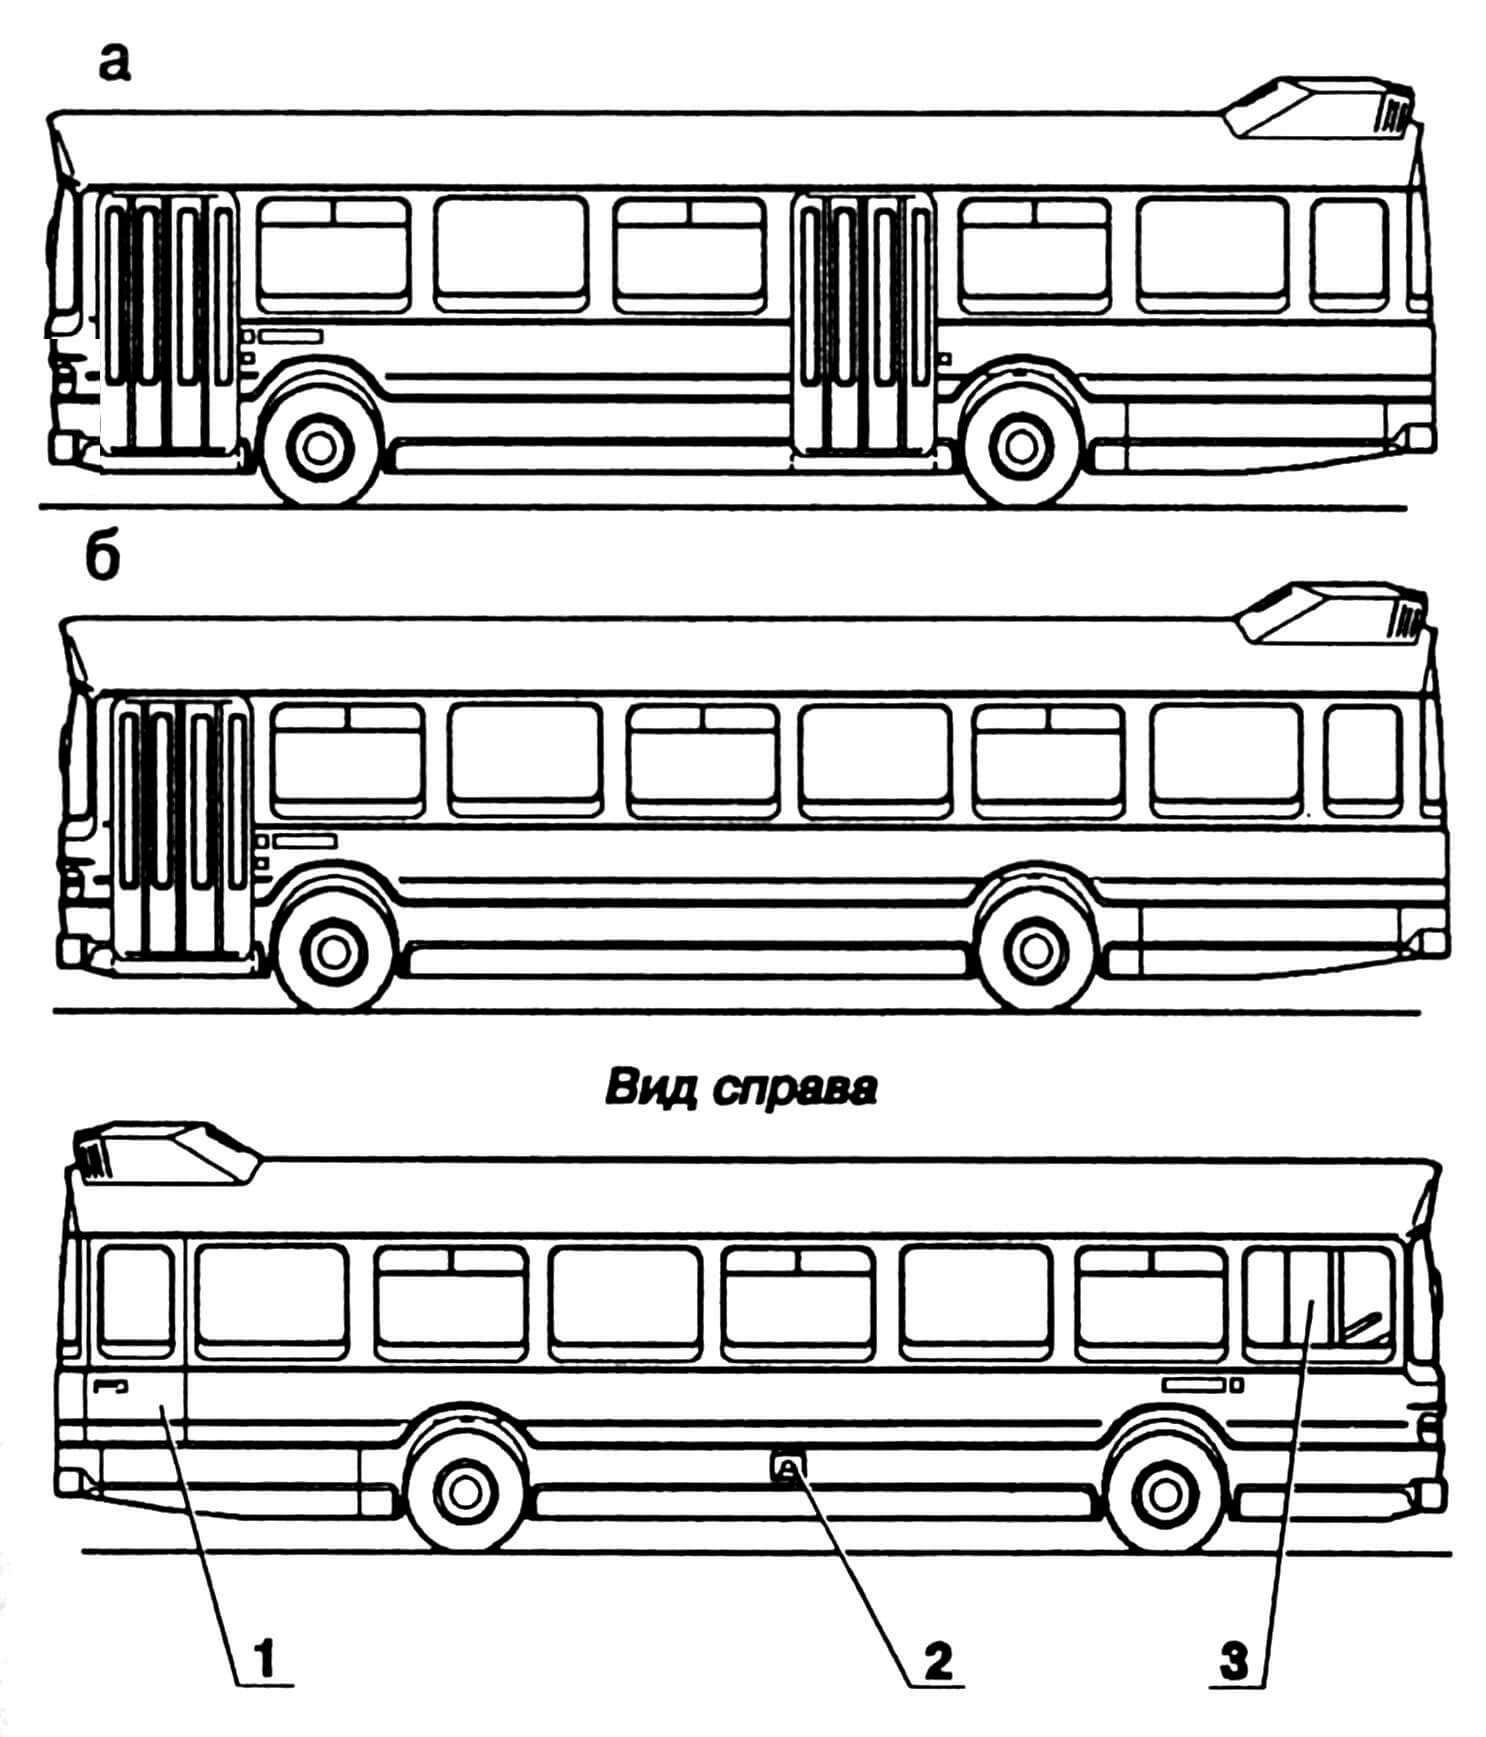 Варианты кузовов (а — двухдверный, б — однодверный): 1 — дверь аварийного выхода, 2 — горловина бензобака, 3 — окно водителя (с форточкой).